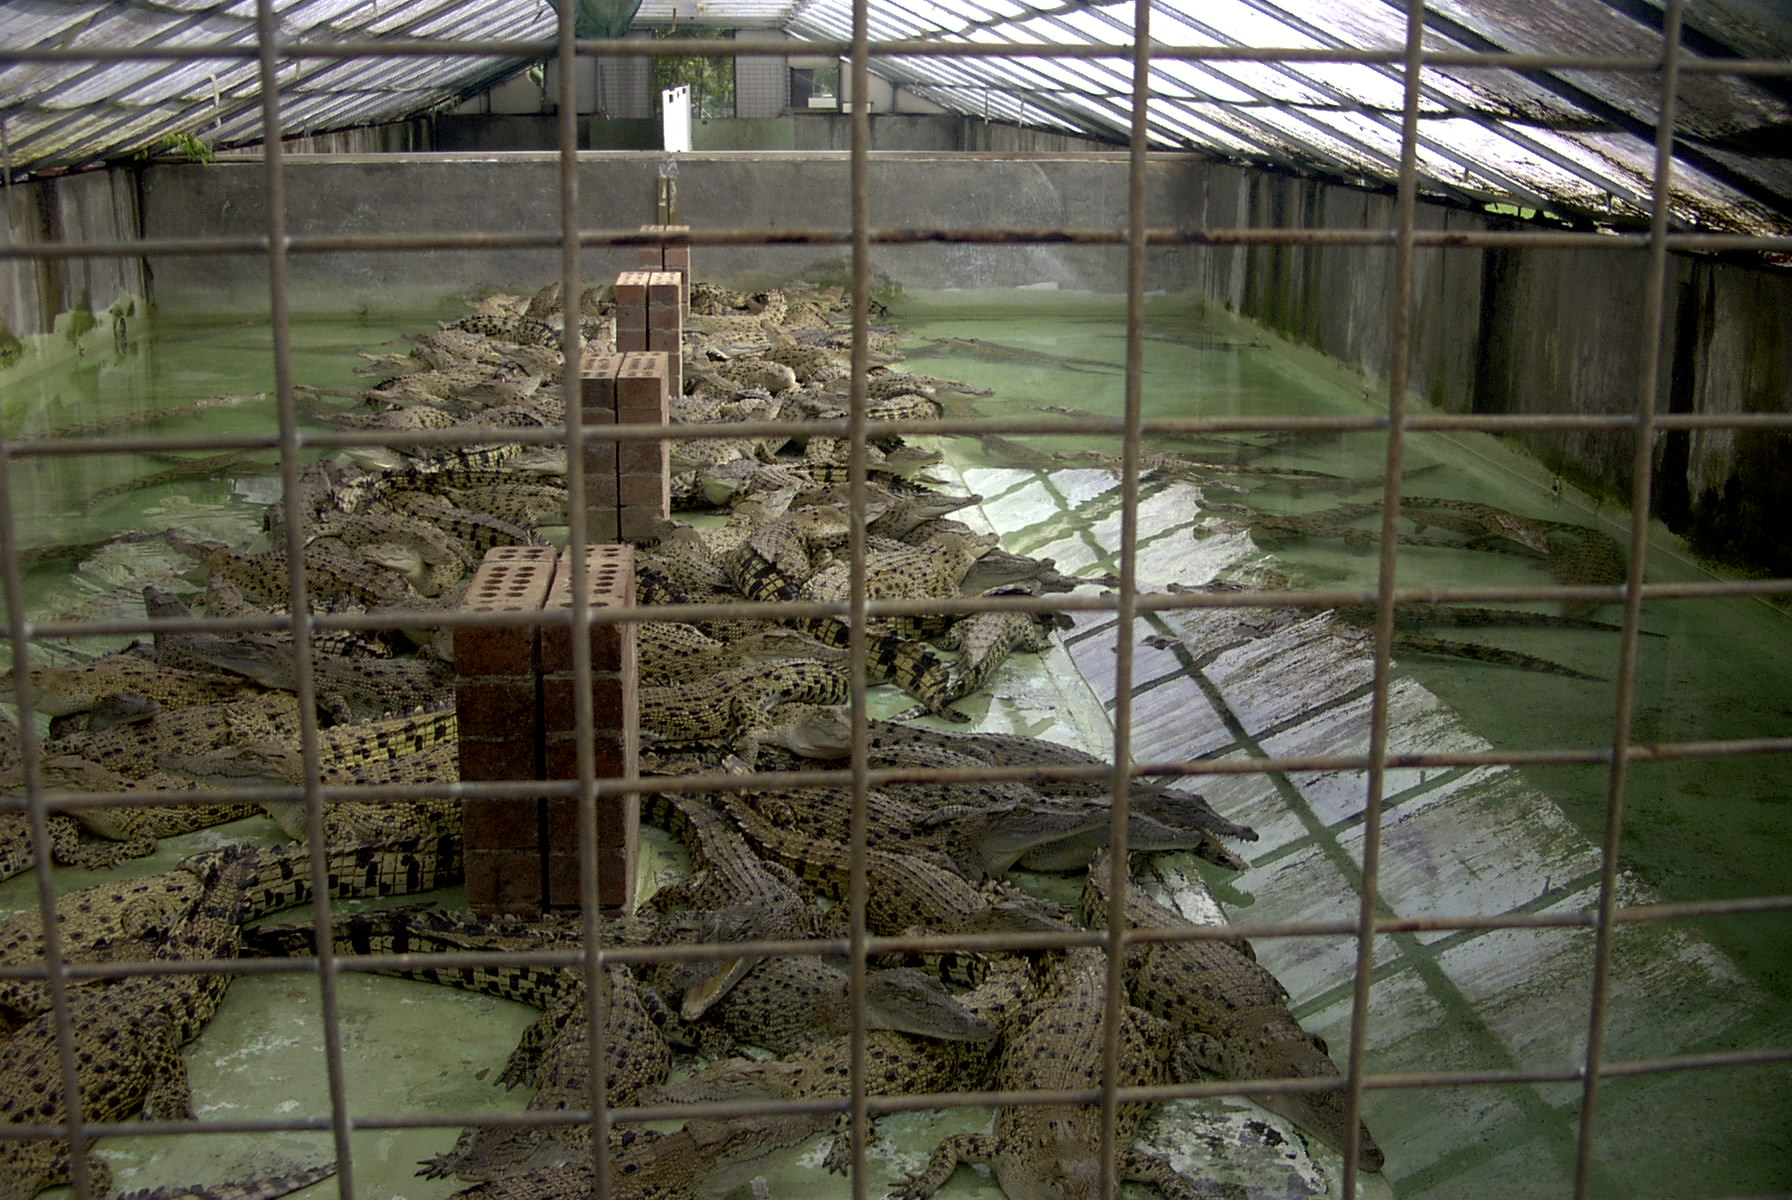 hermes alligator farm